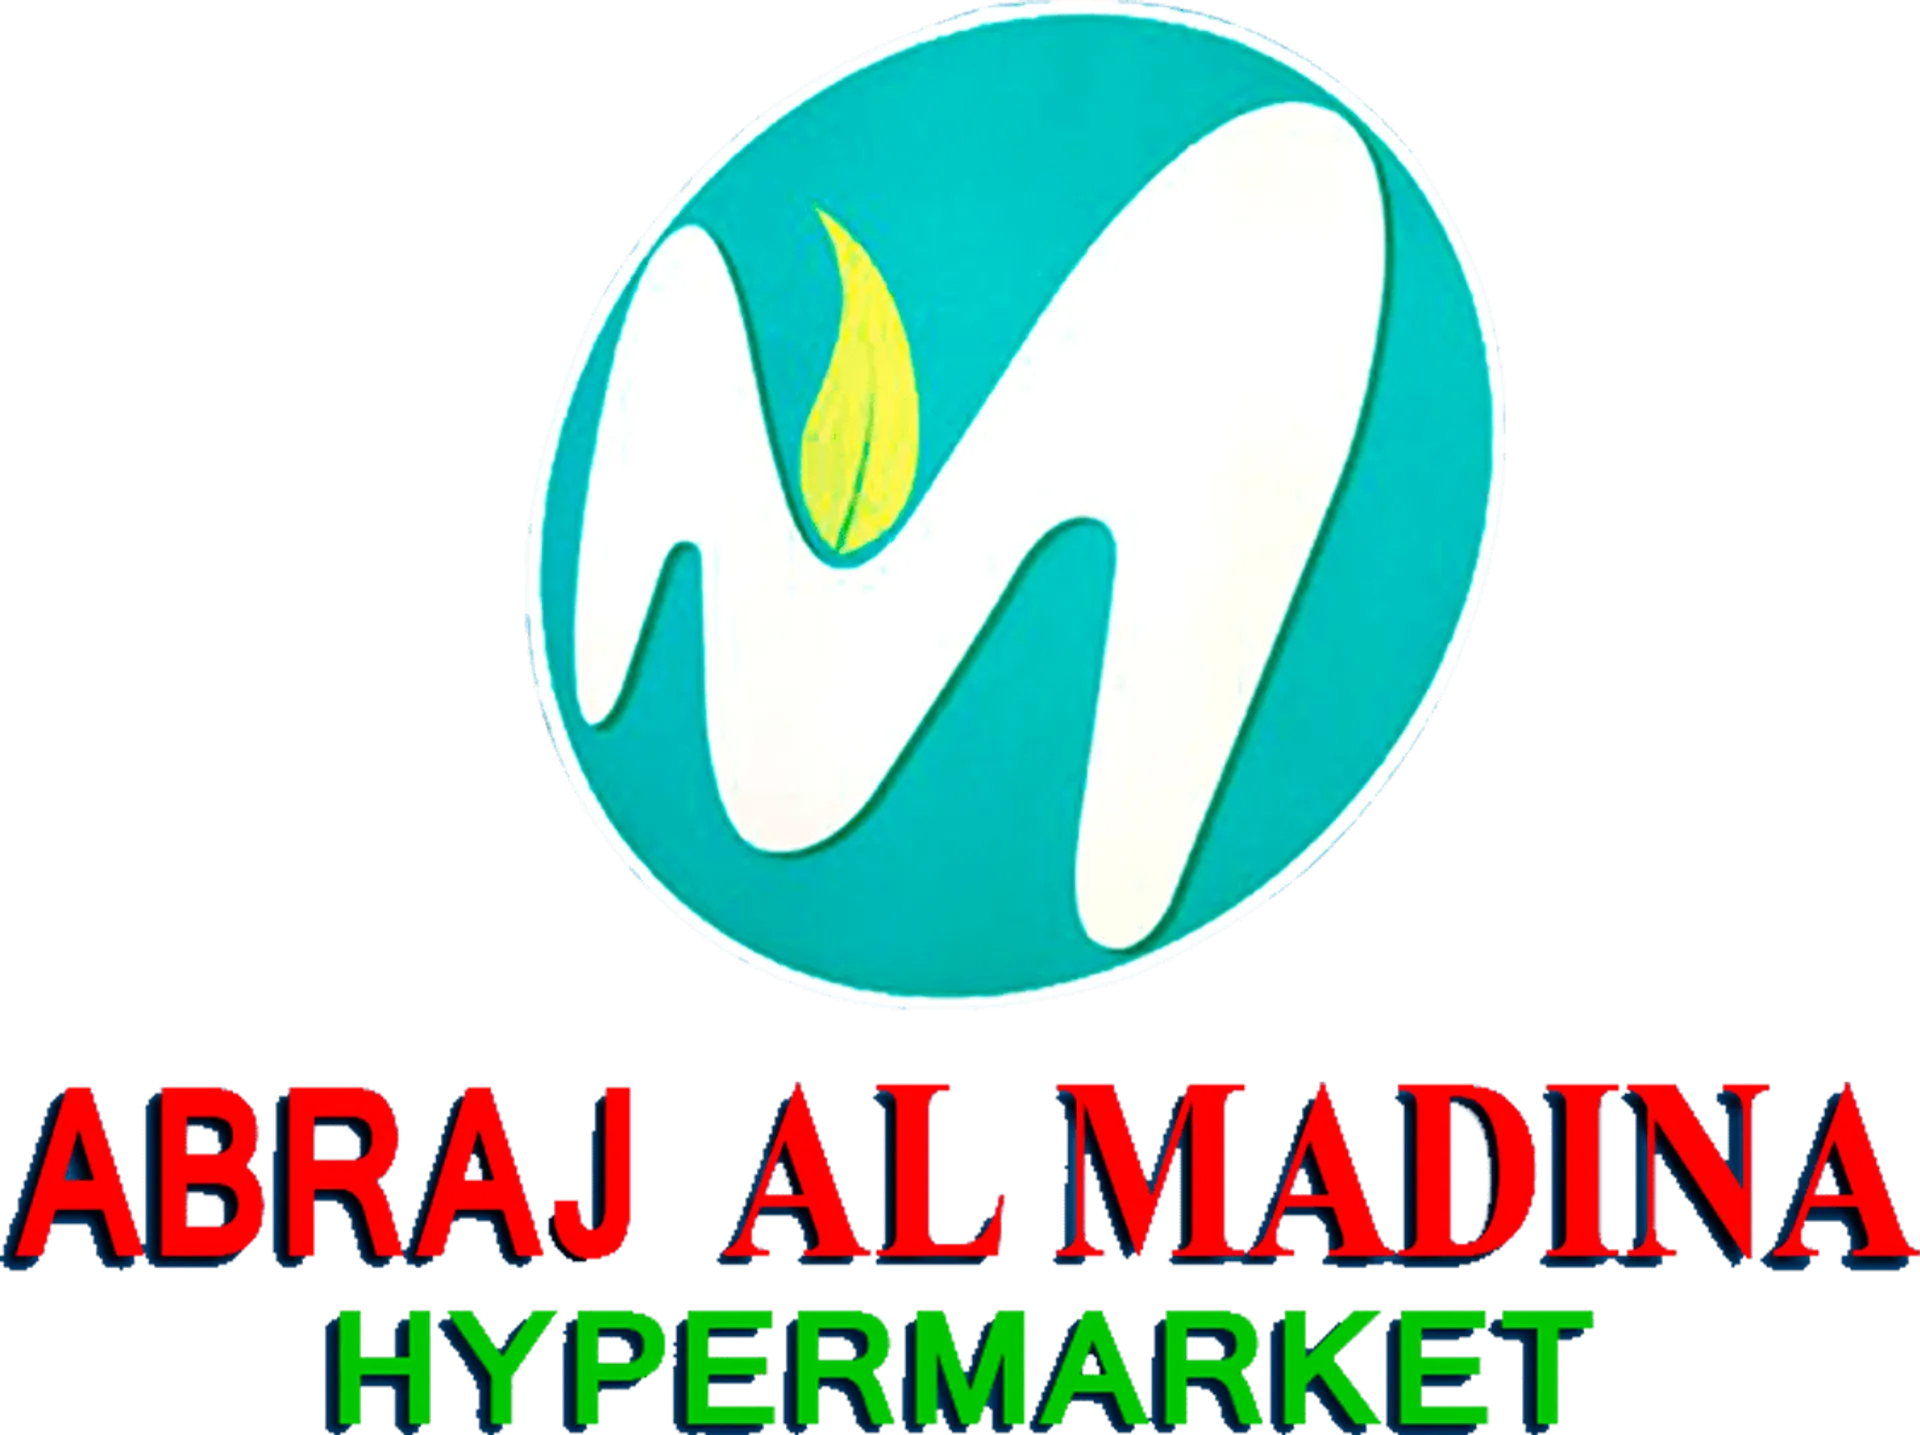 AL MADINA logo. Current catalogue